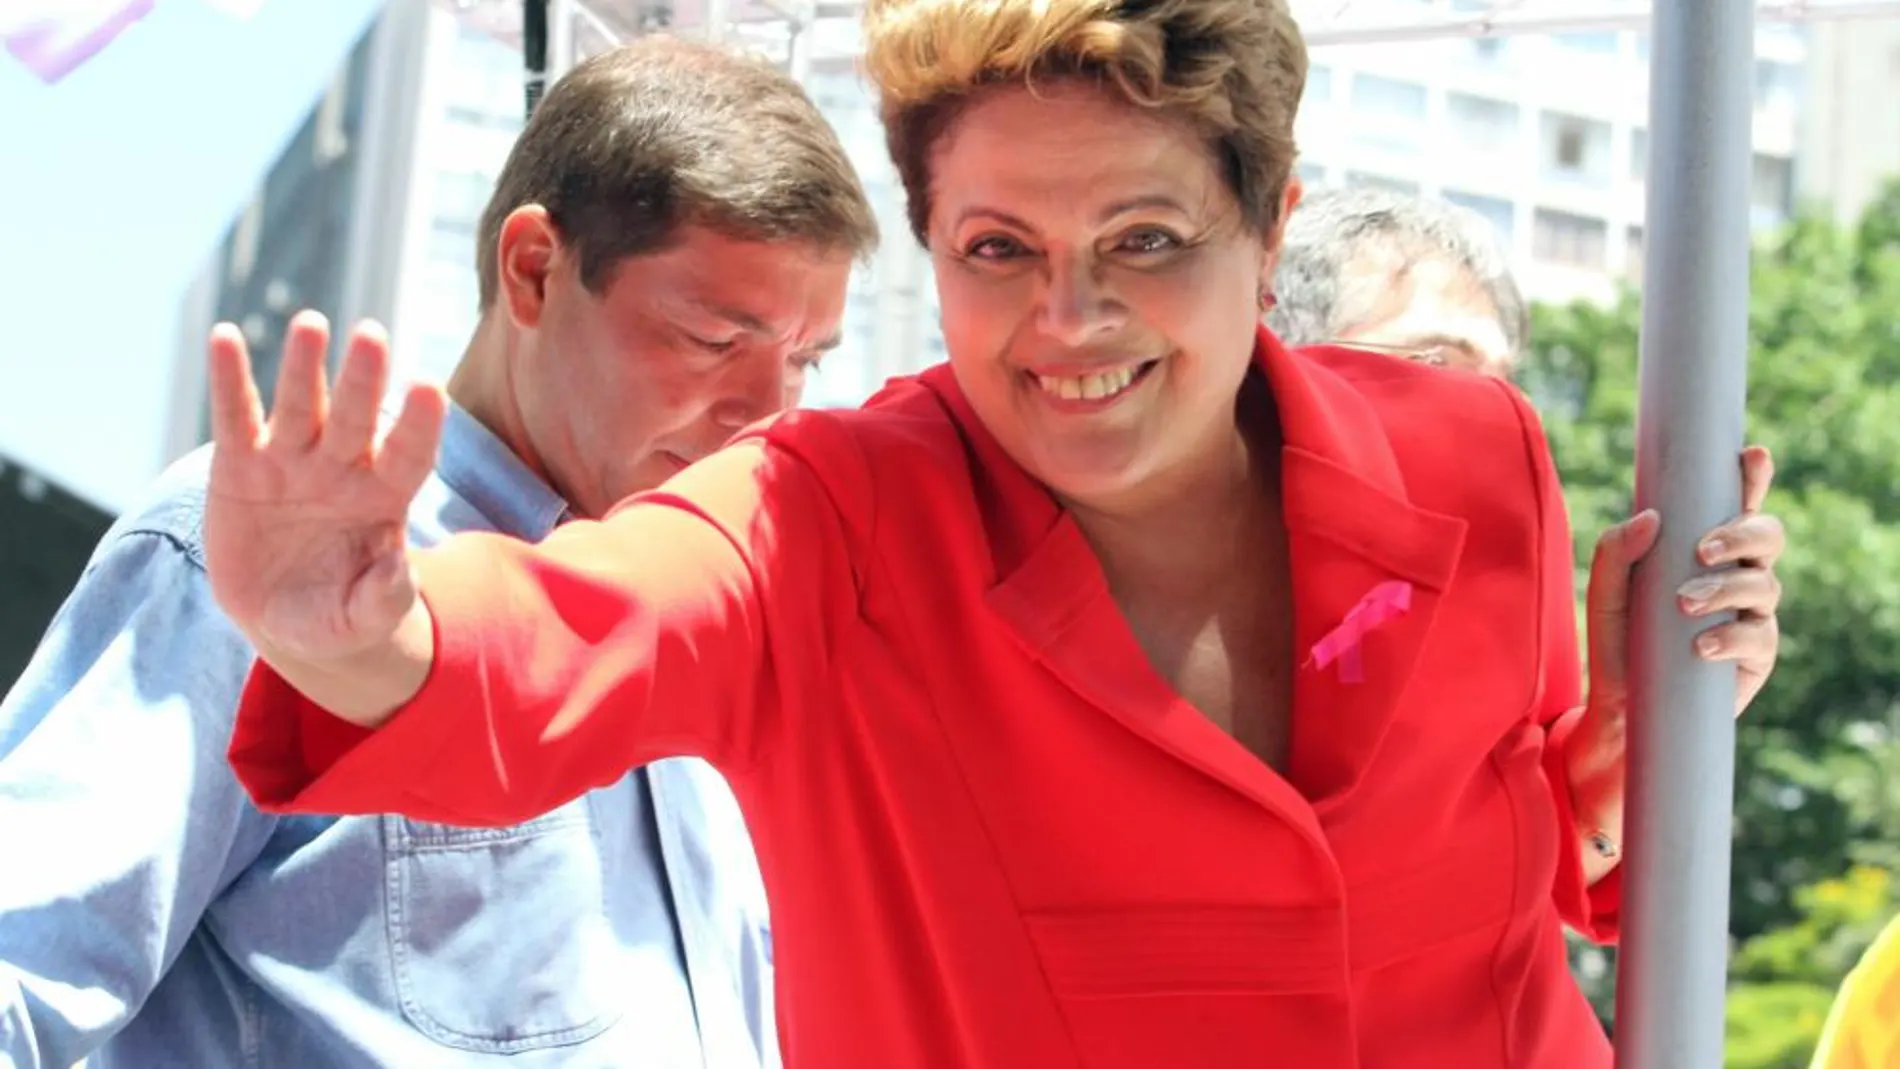 La presidenta brasileña, Dilma Rousseff, candidata a la reelección, saluda en Belo Horizonte, hoy, sábado, previo a los comicios de mañana.